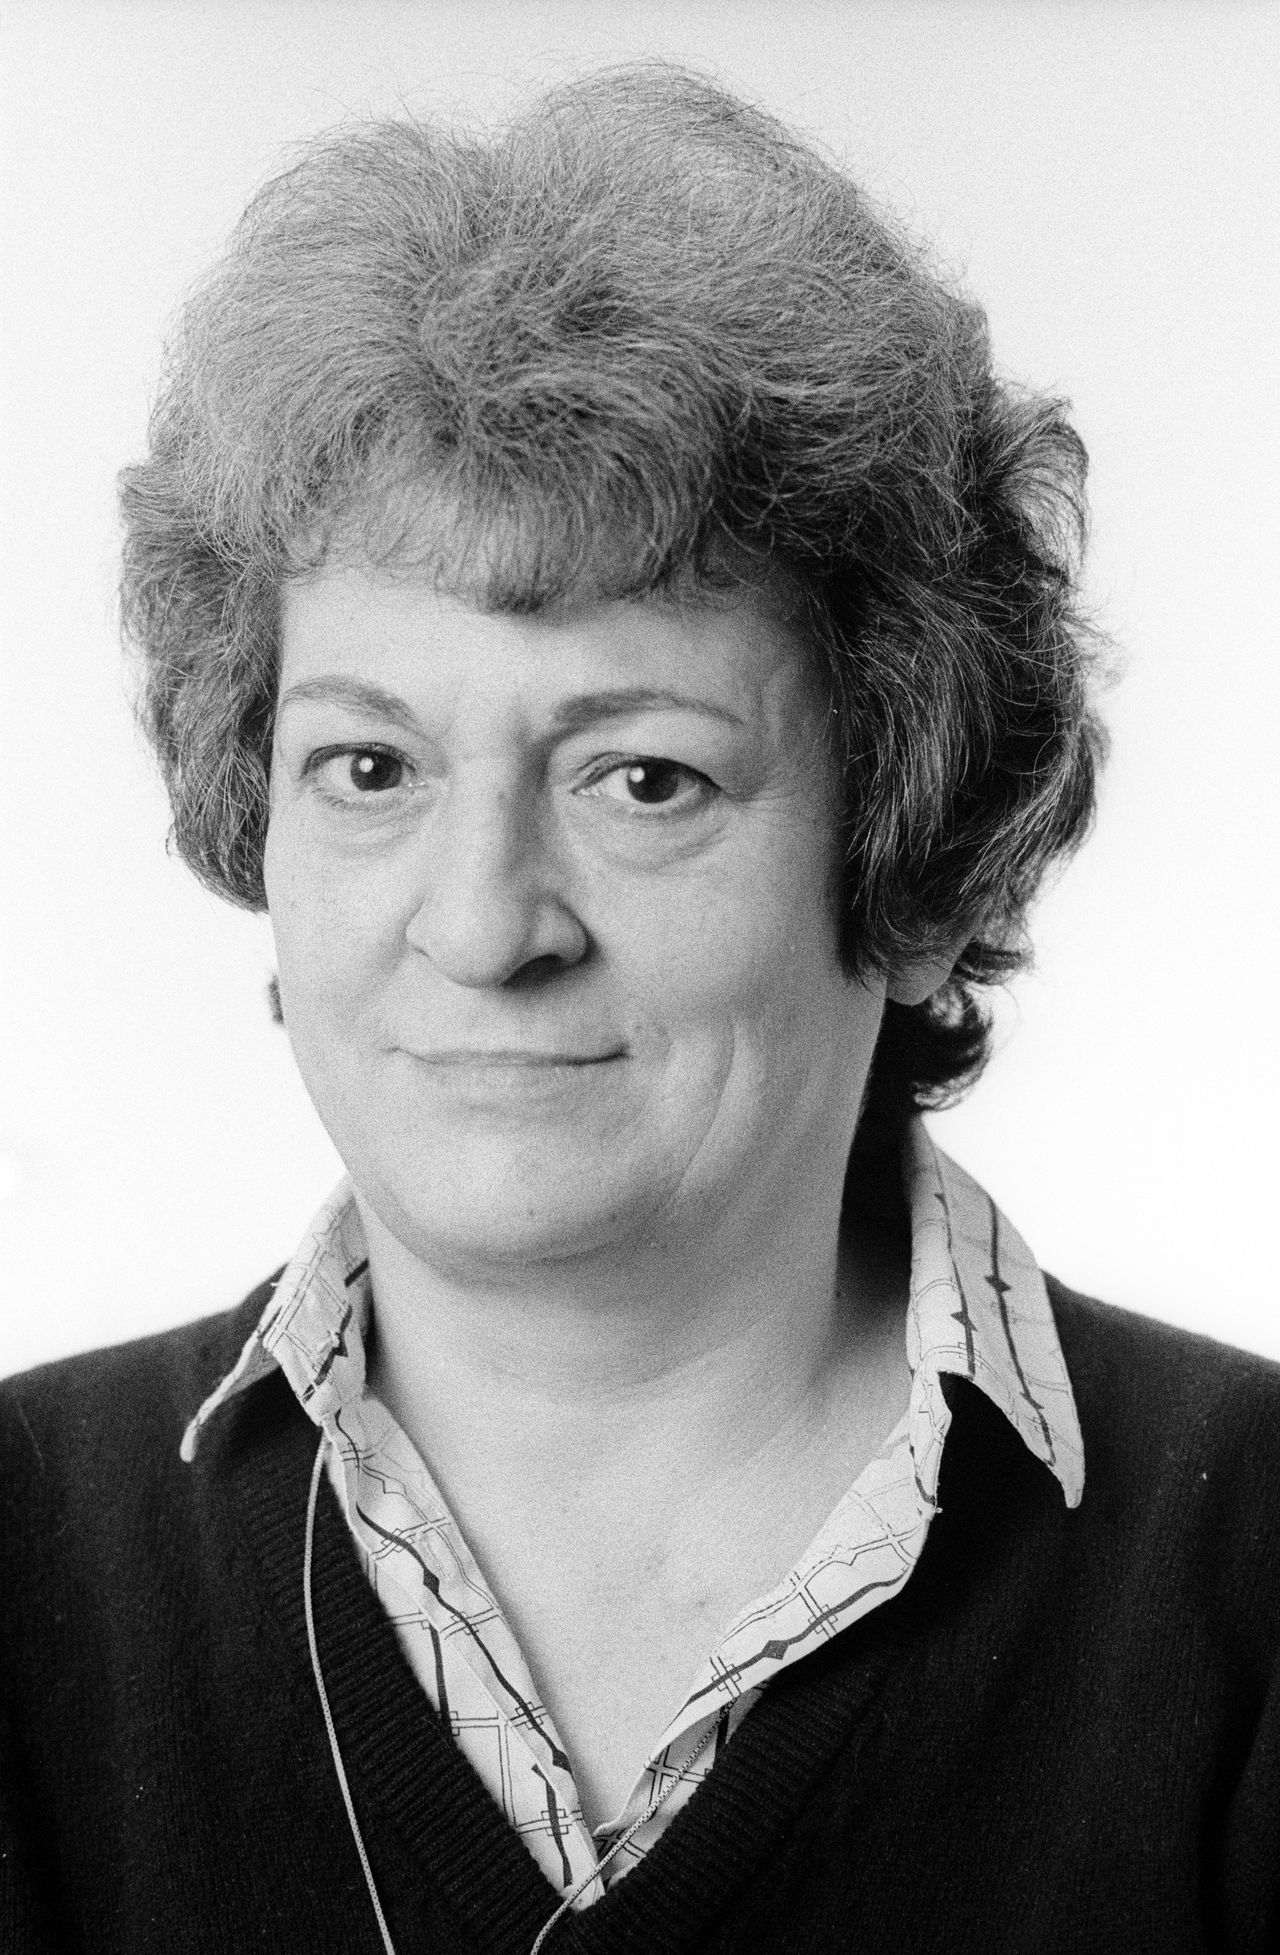 Els Flipsen (1943-2009), verslaggever en eindredacteur NRC Handelsblad